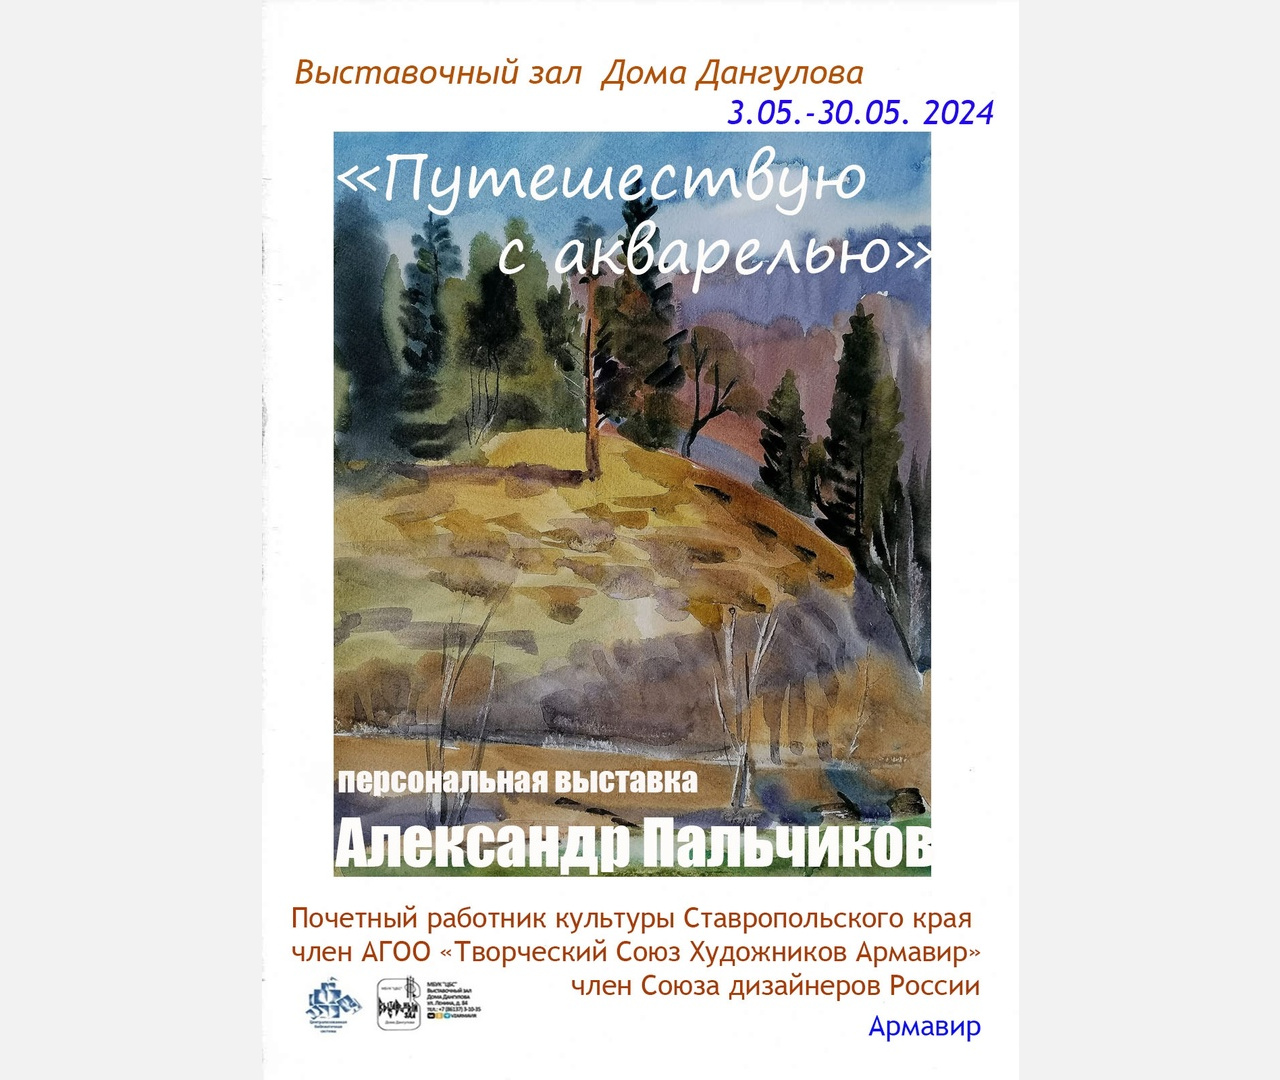 В Армавире 3 мая в 12:00 в выставочном зале Дома Дангулова откроется экспозиция «Путешествую акварелью»